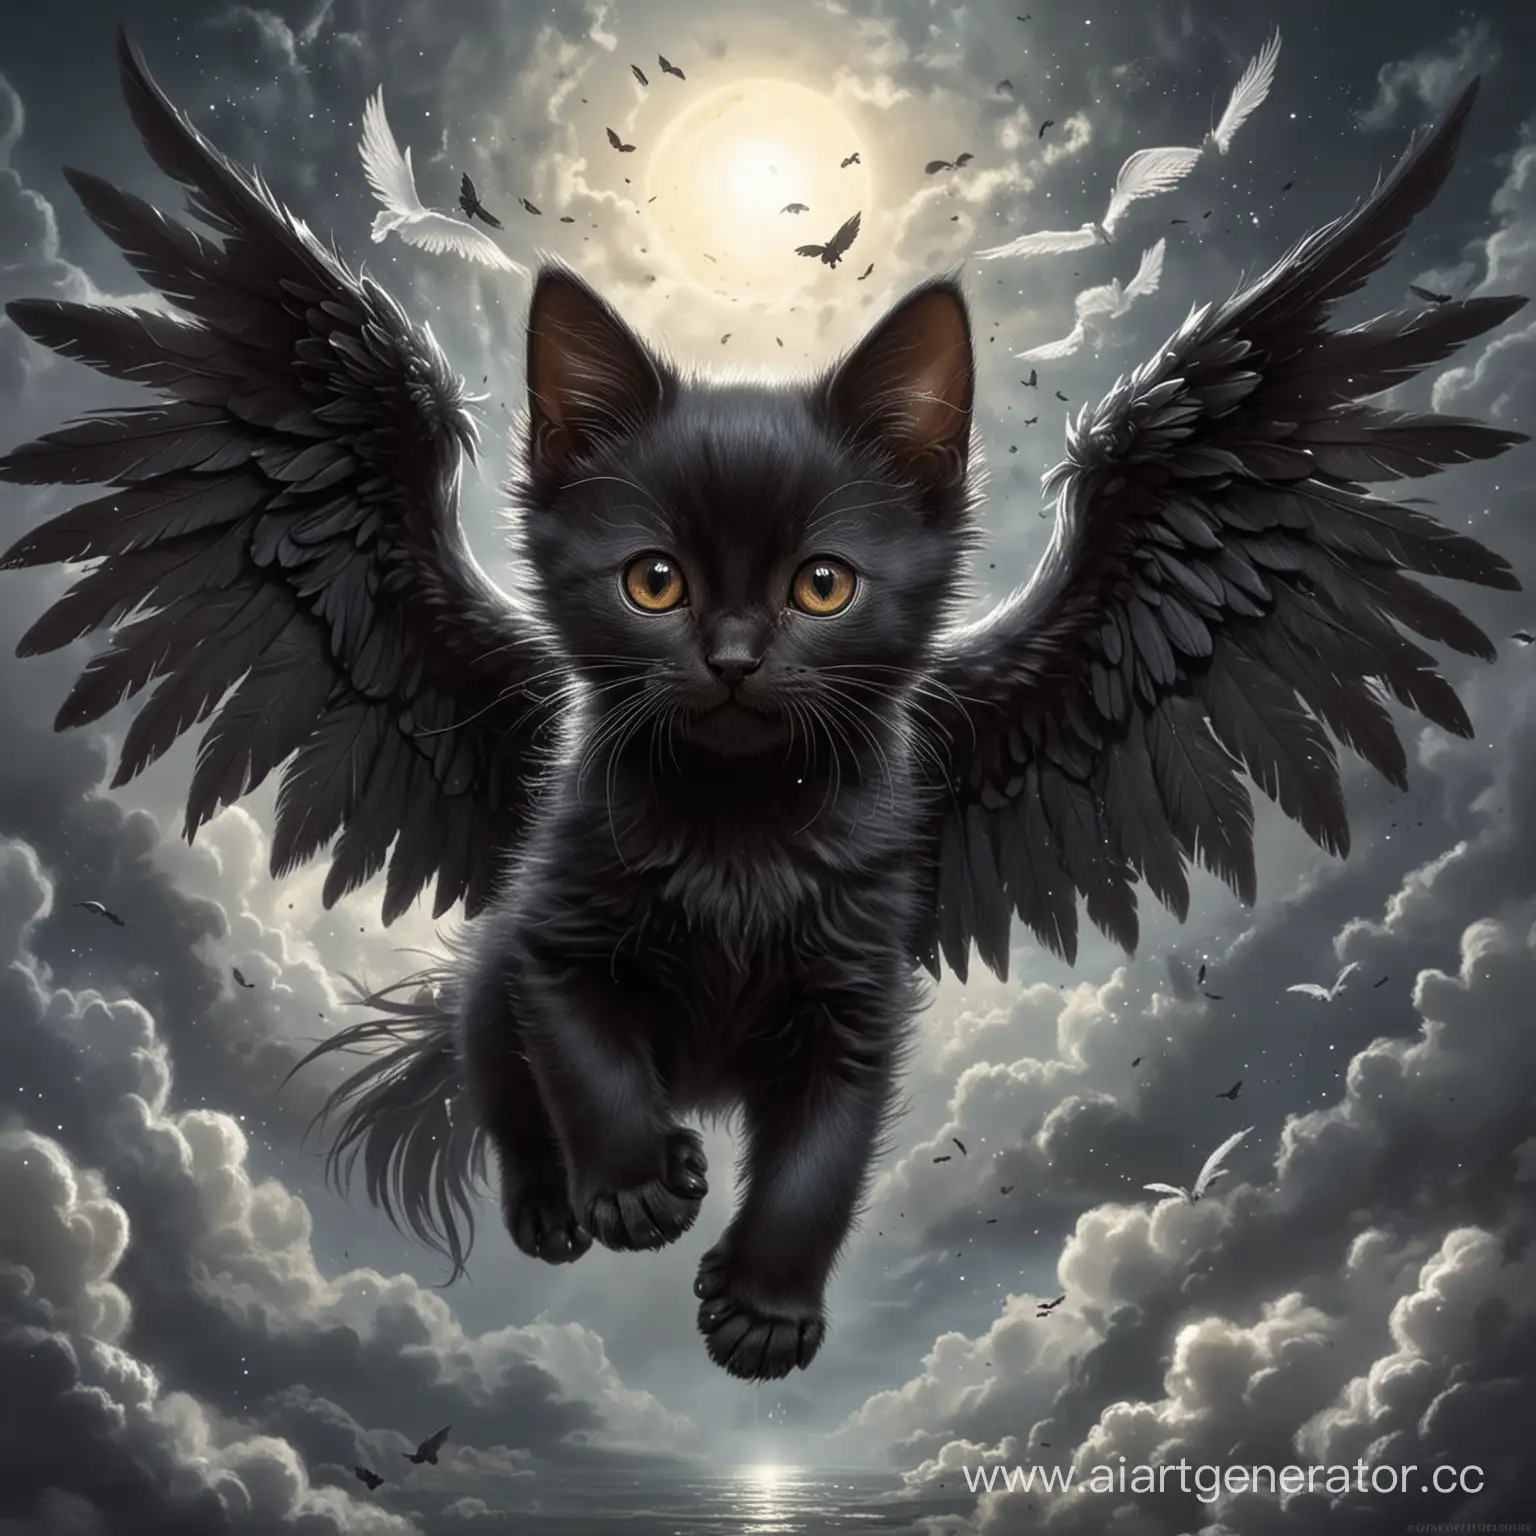 Fantasy-Art-Black-Kitten-with-Wings